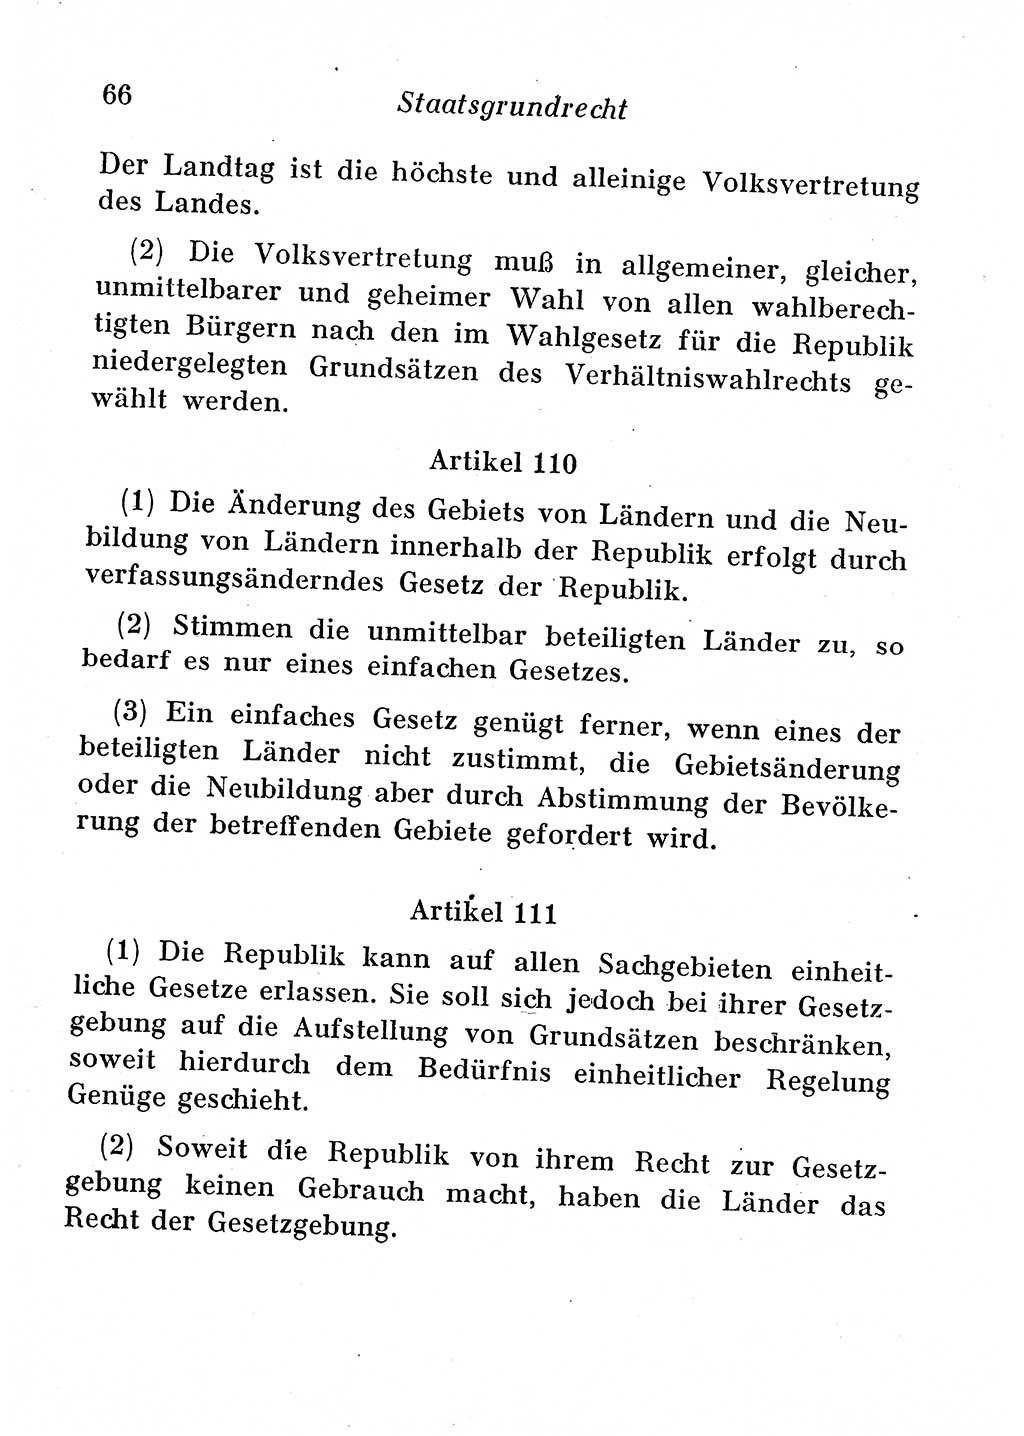 Staats- und verwaltungsrechtliche Gesetze der Deutschen Demokratischen Republik (DDR) 1958, Seite 66 (StVerwR Ges. DDR 1958, S. 66)